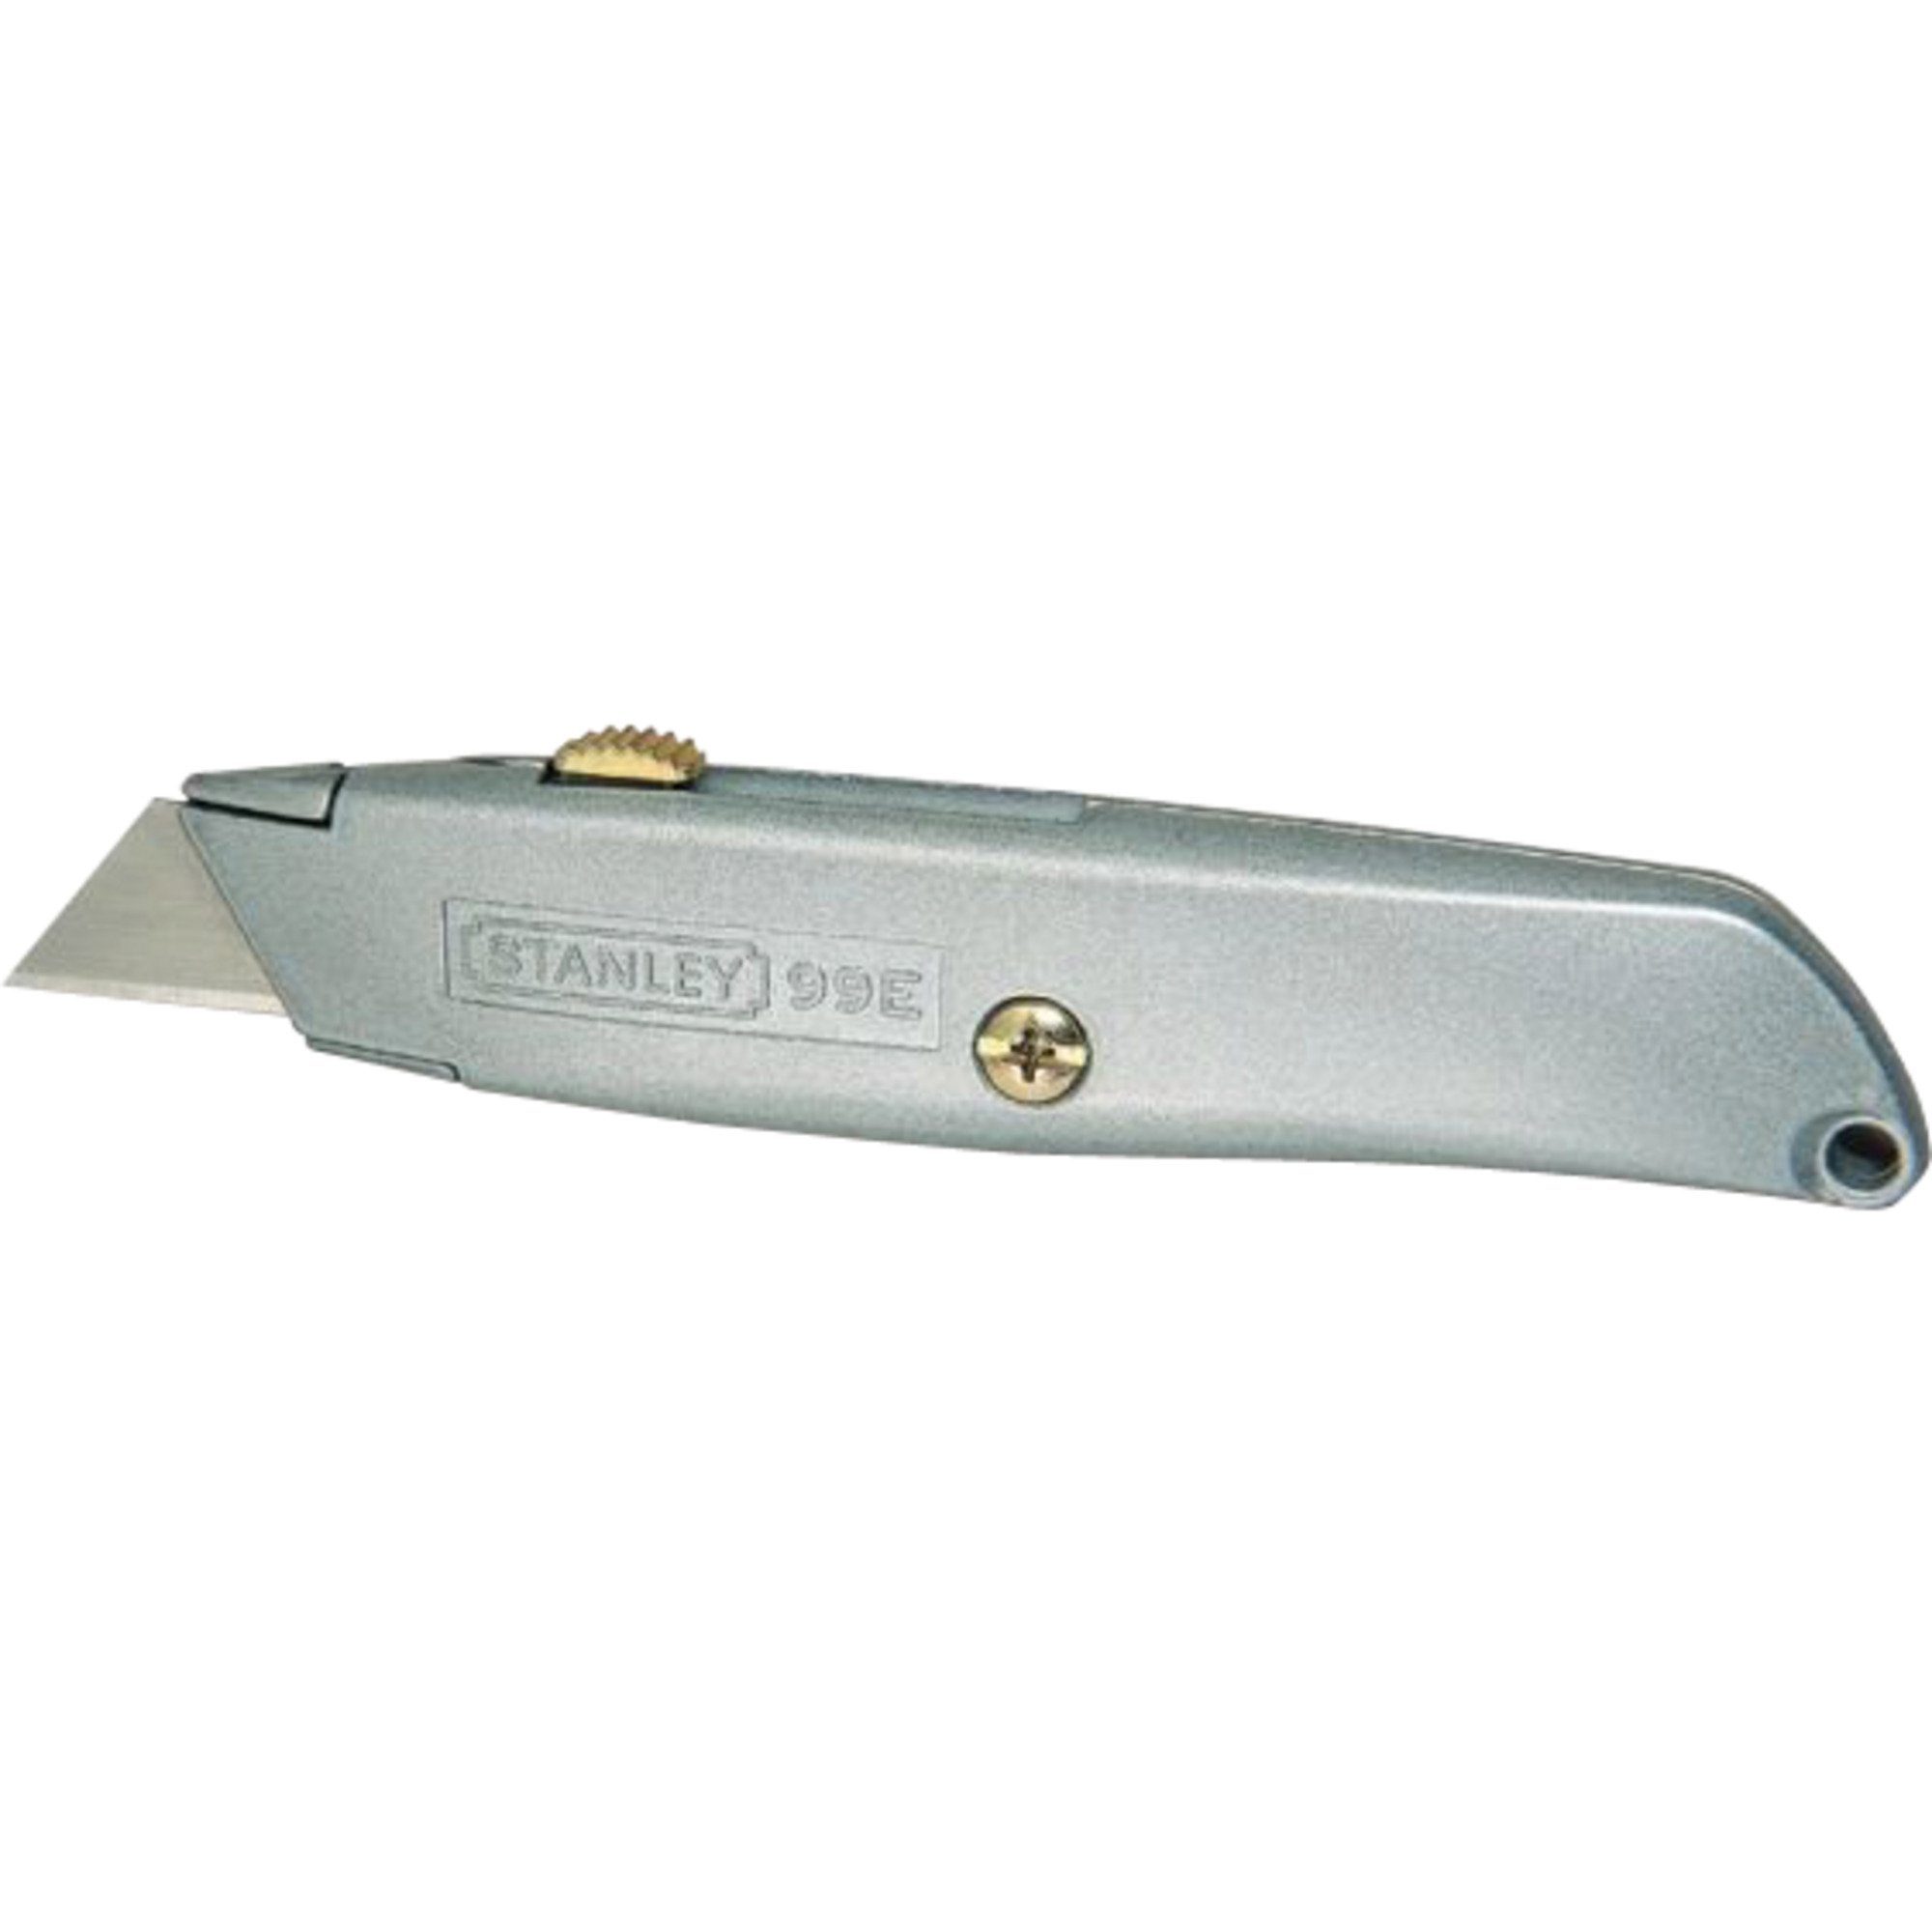 STANLEY Multitool Stanley Messer 99E, einziehbare Klinge